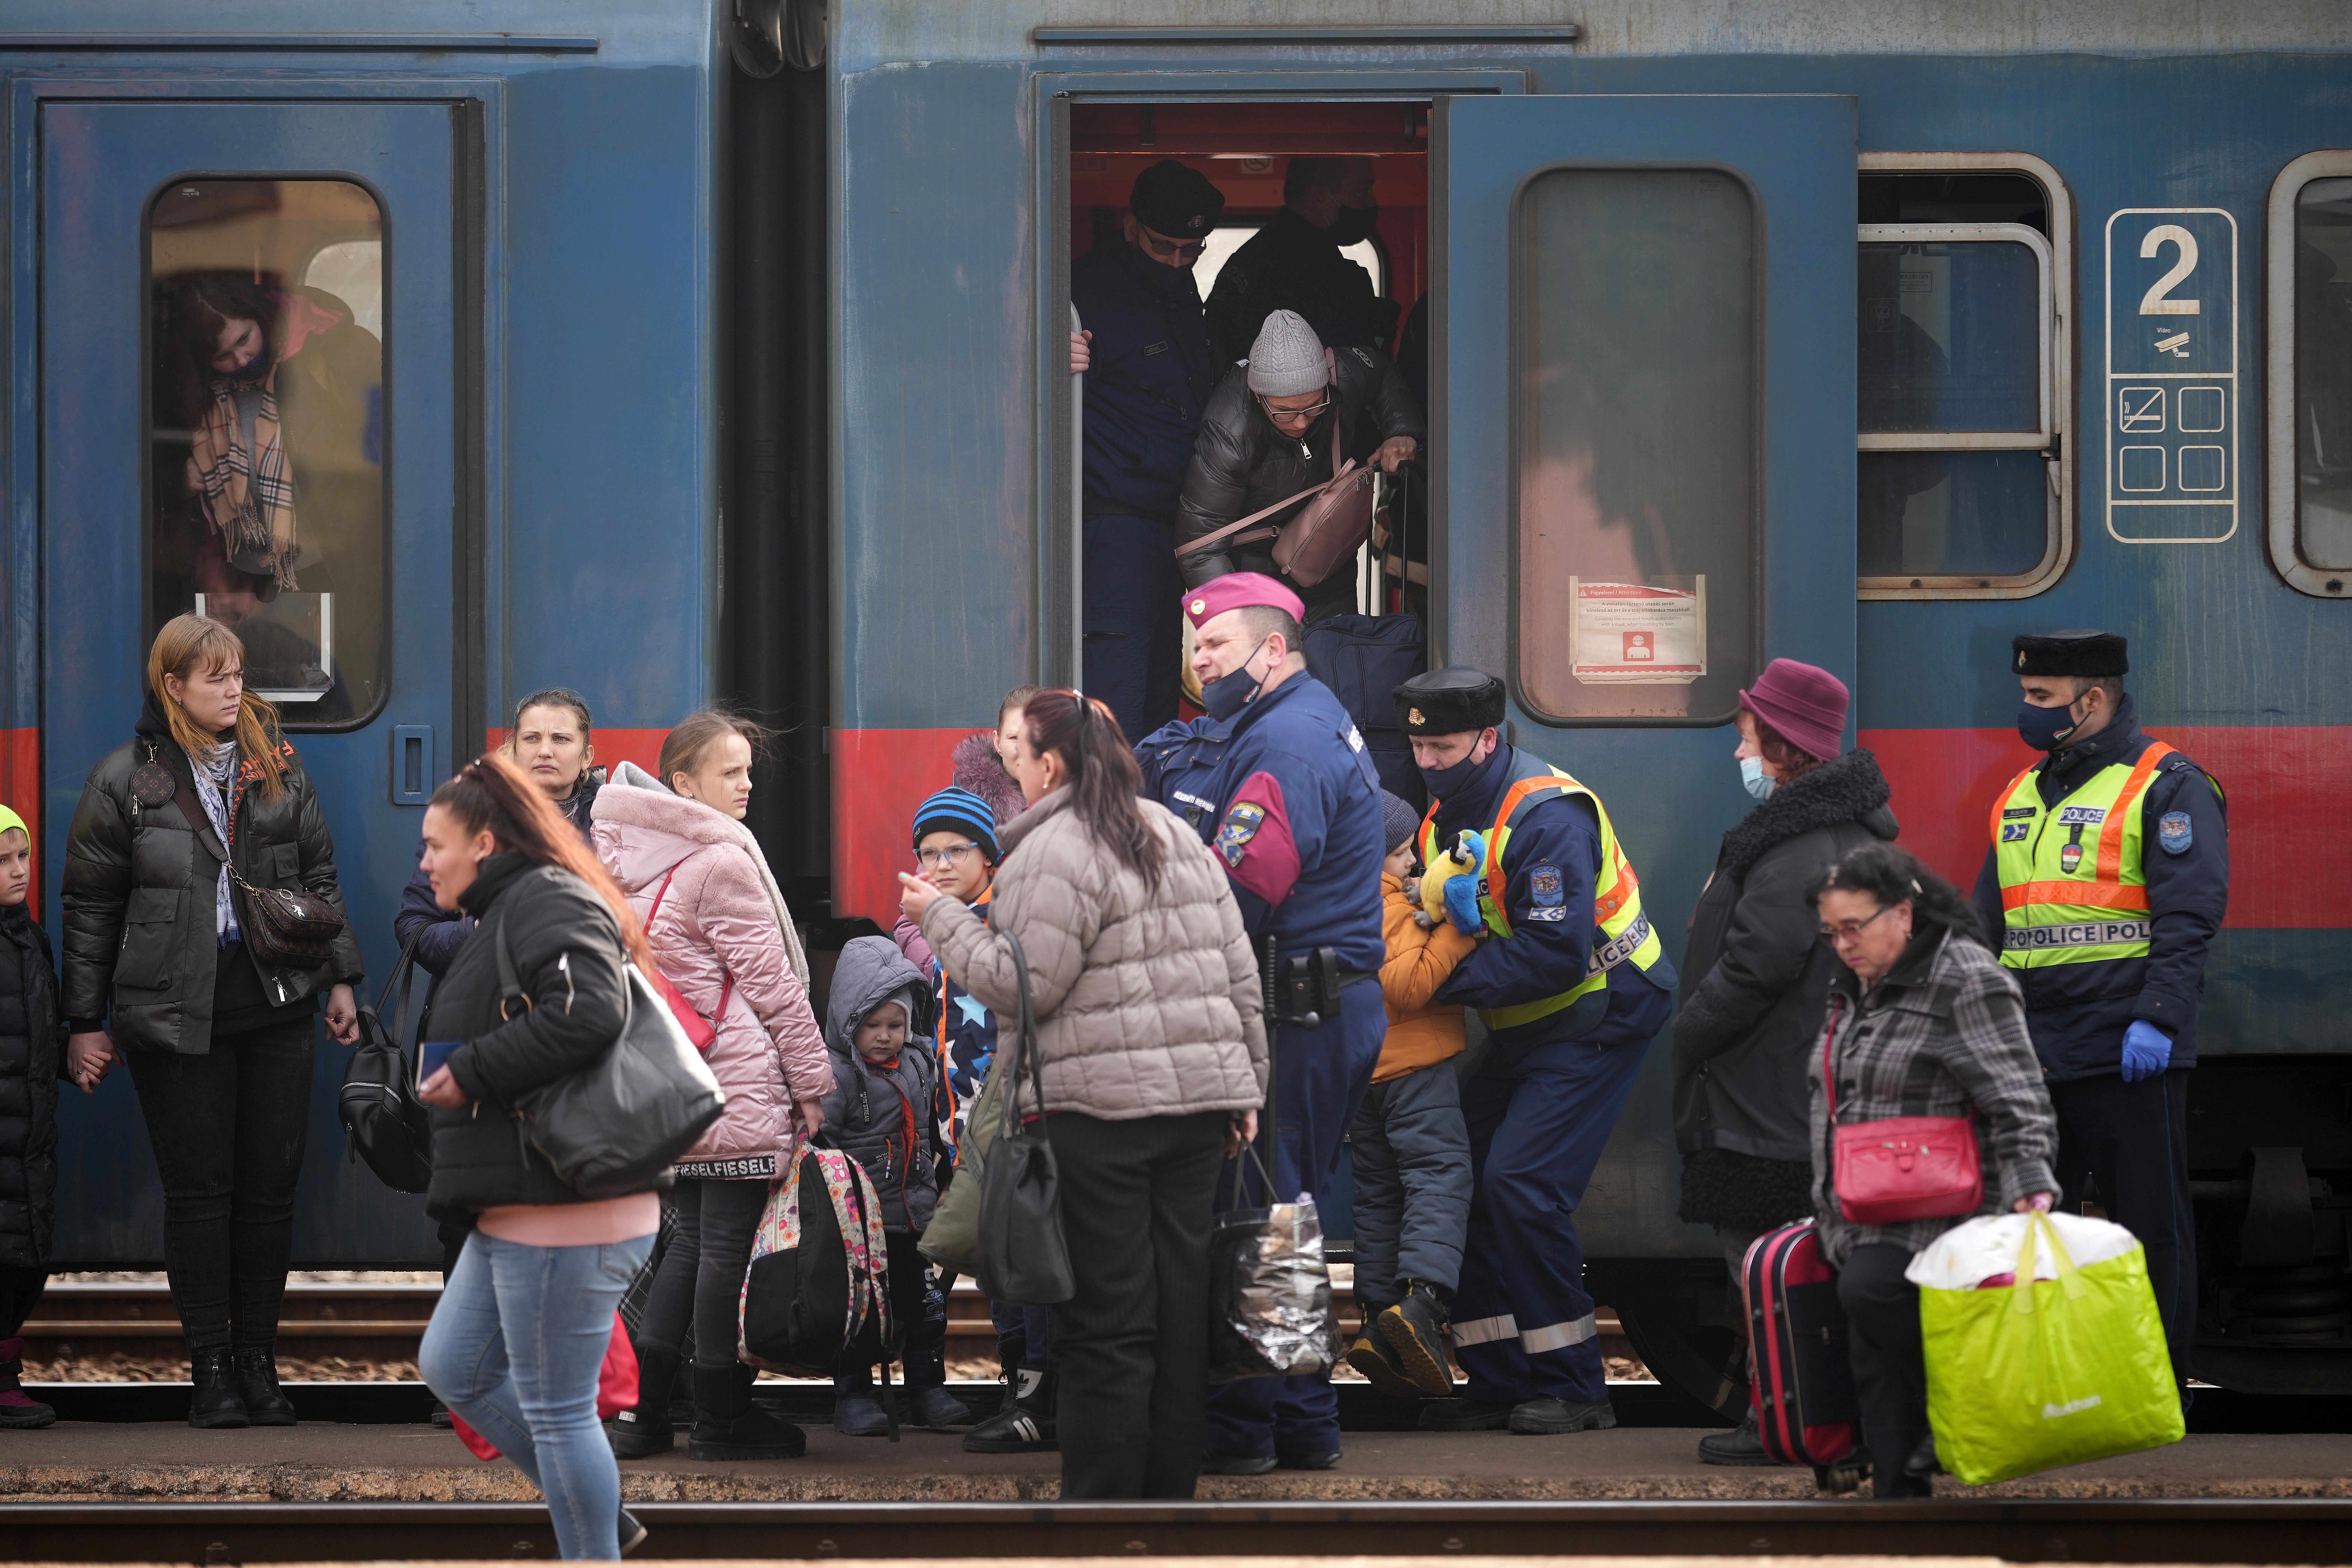 Los refugiados llegan a la ciudad de Zahon, en la frontera de Hungría, en un tren que viajó desde Ucrania